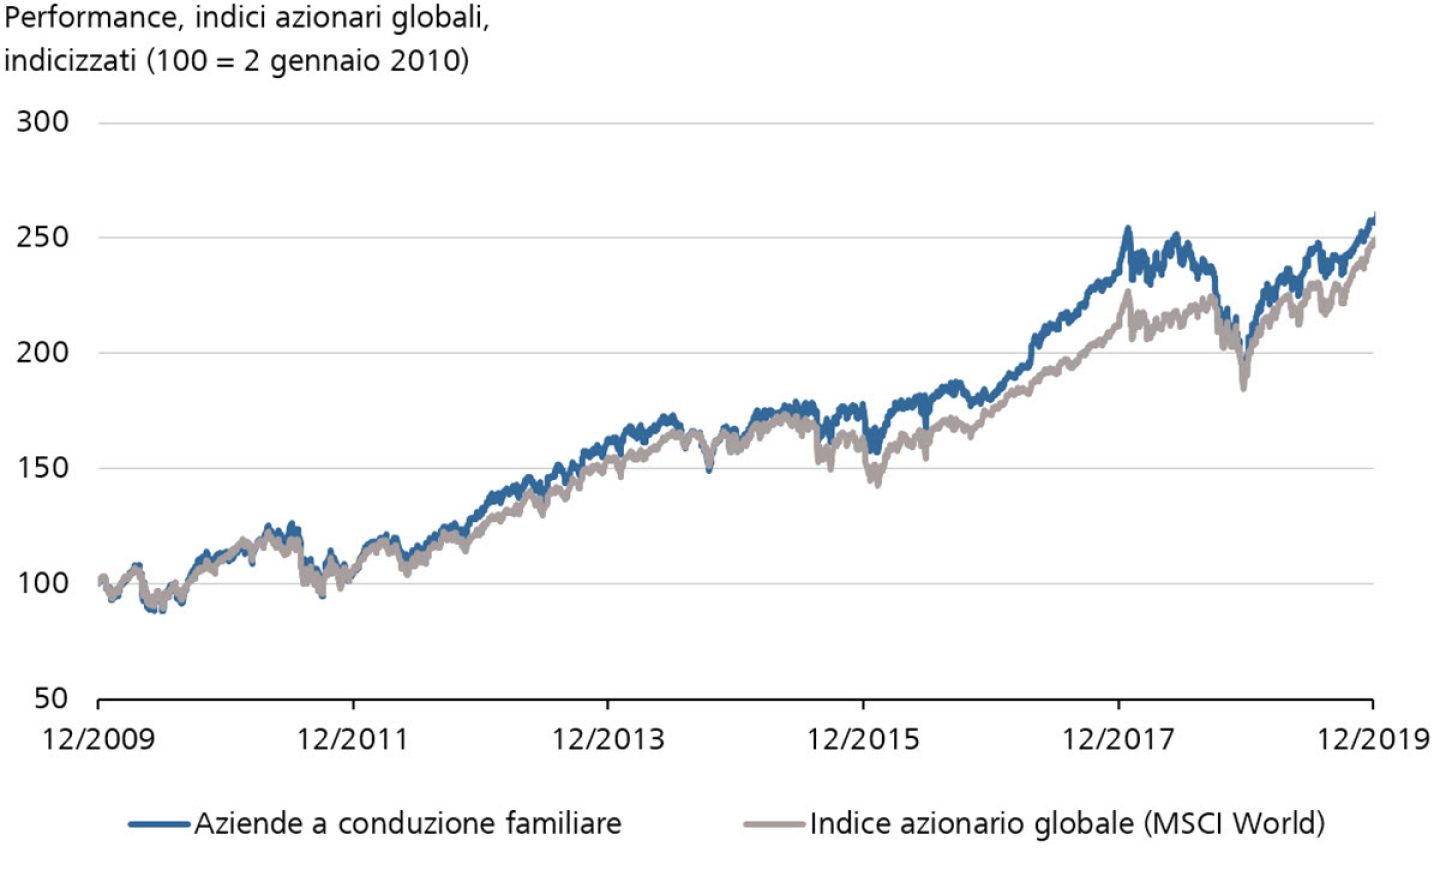 Performance, indici azionari globali, indicizzati (100 = 2 gennaio 2010)